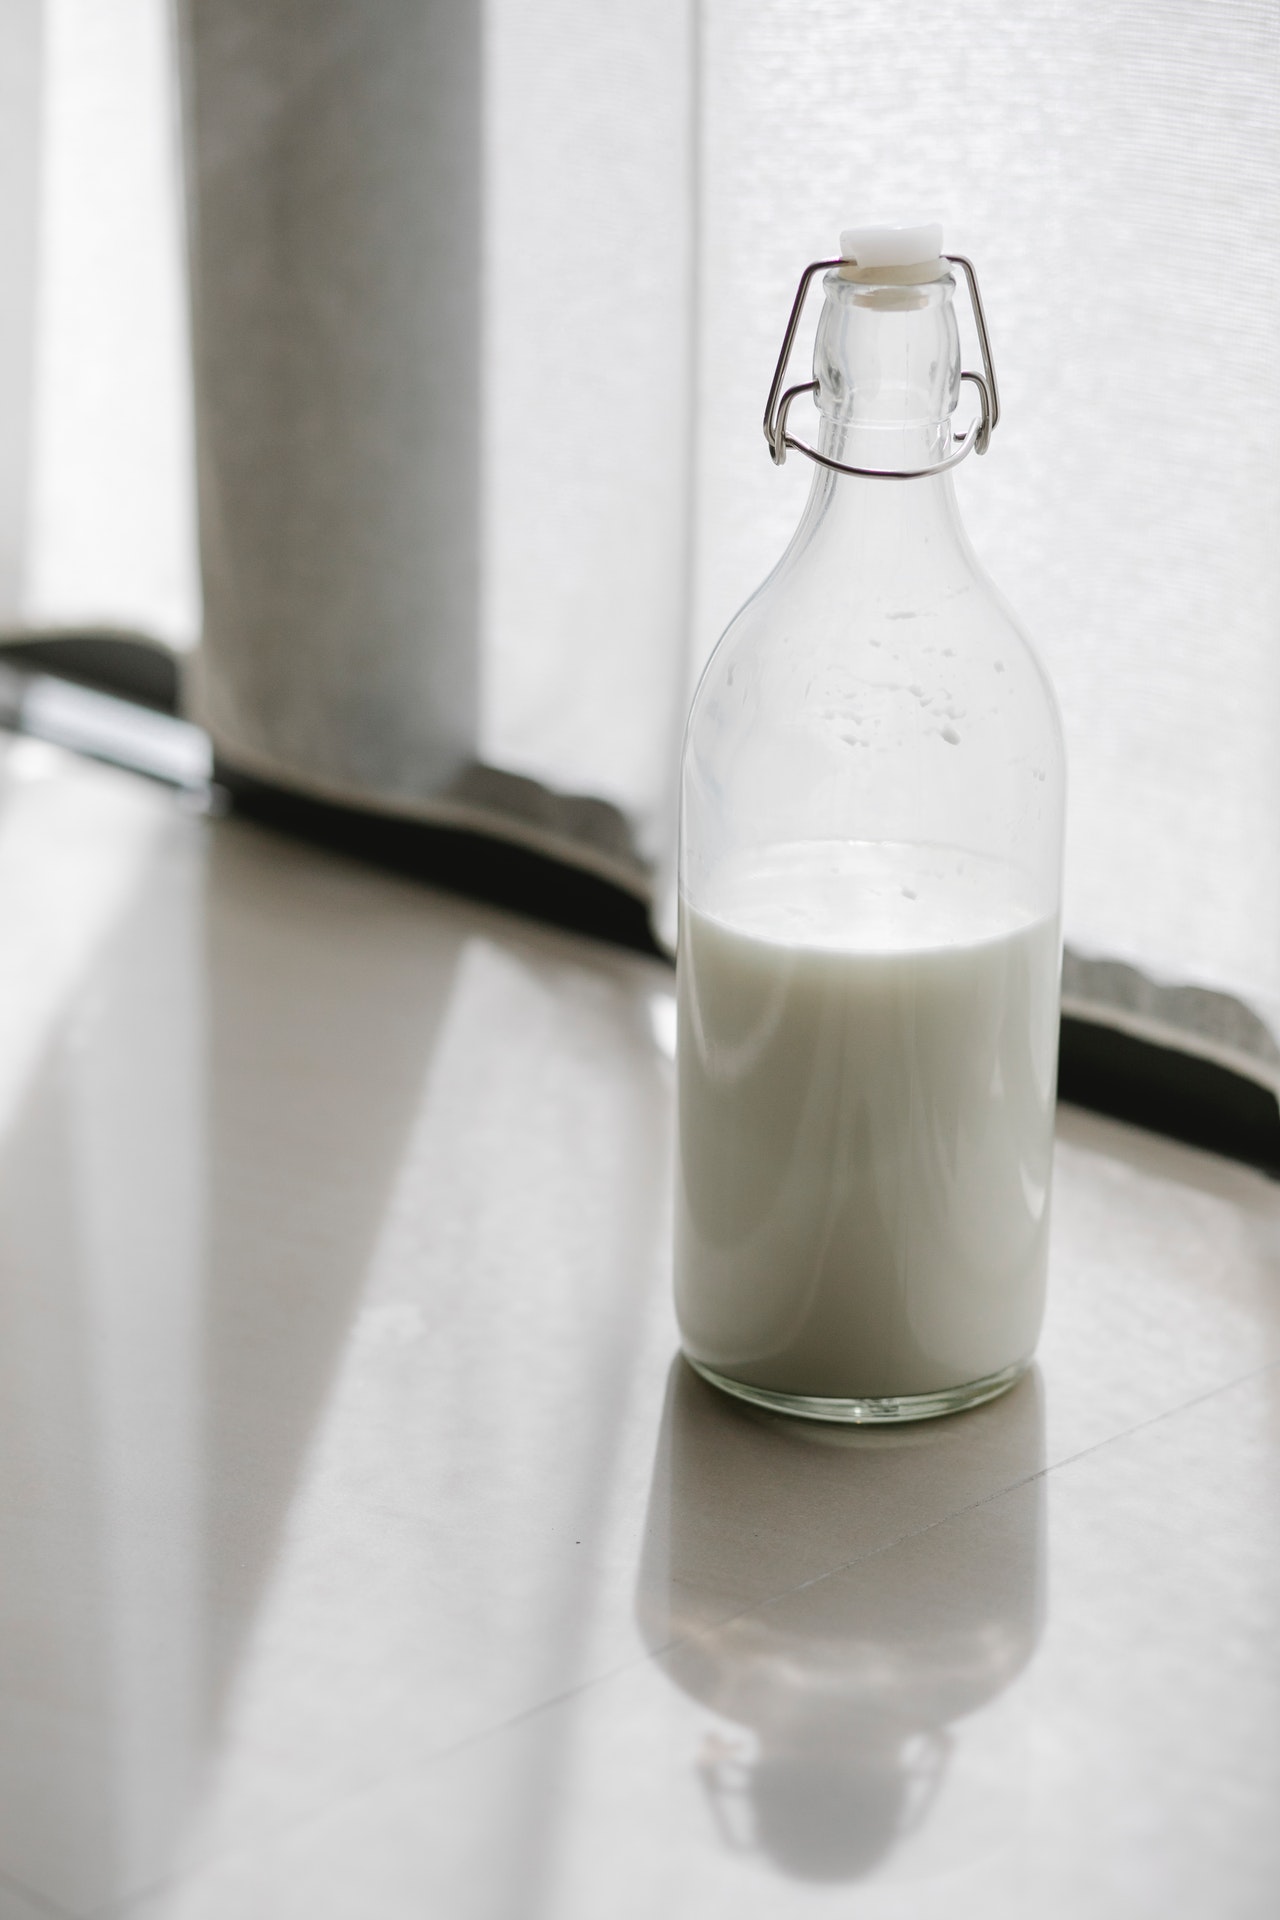 Das Eiweißpulver kann in Flüssigkeiten wie Wasser, Fruchtsäften oder Smoothies aufgelöst werden. Alternativ lässt sich Whey-Protein auch mit Joghurt, Quark oder Müsli aufnehmen.